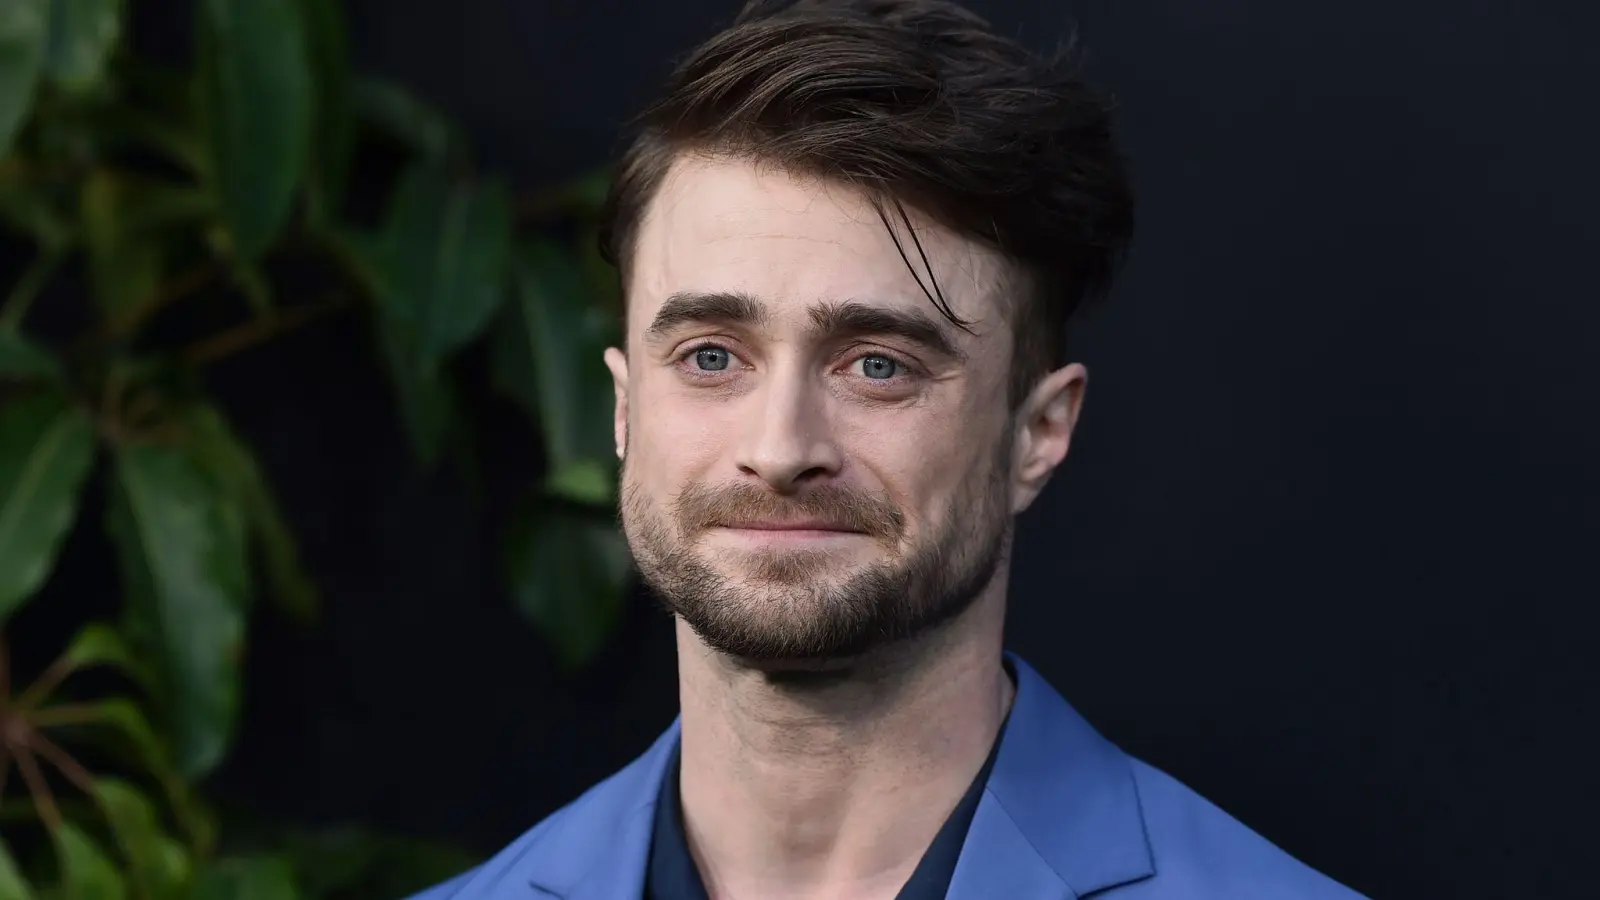 Daniel Radcliffe ist vor allem durch seine Rolle als „Harry Potter“ bekannt. (Foto: Jordan Strauss/Invision/AP/dpa)